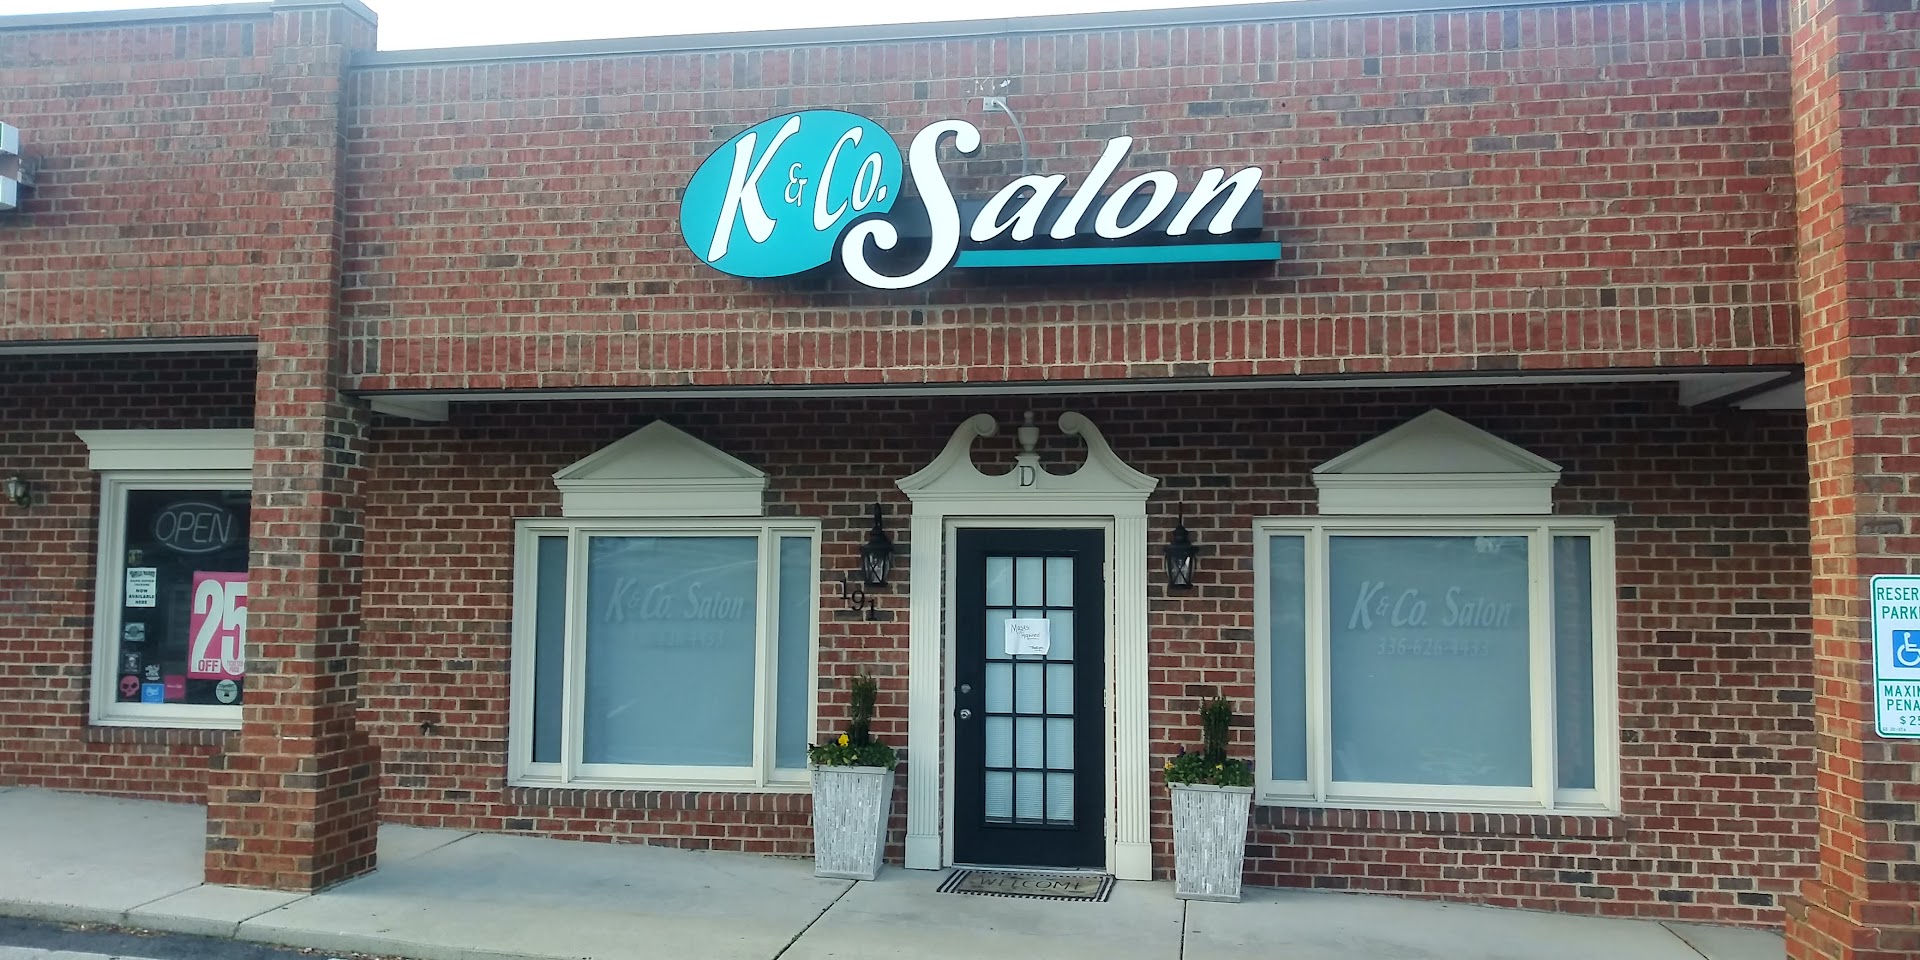 K & Co. Salon